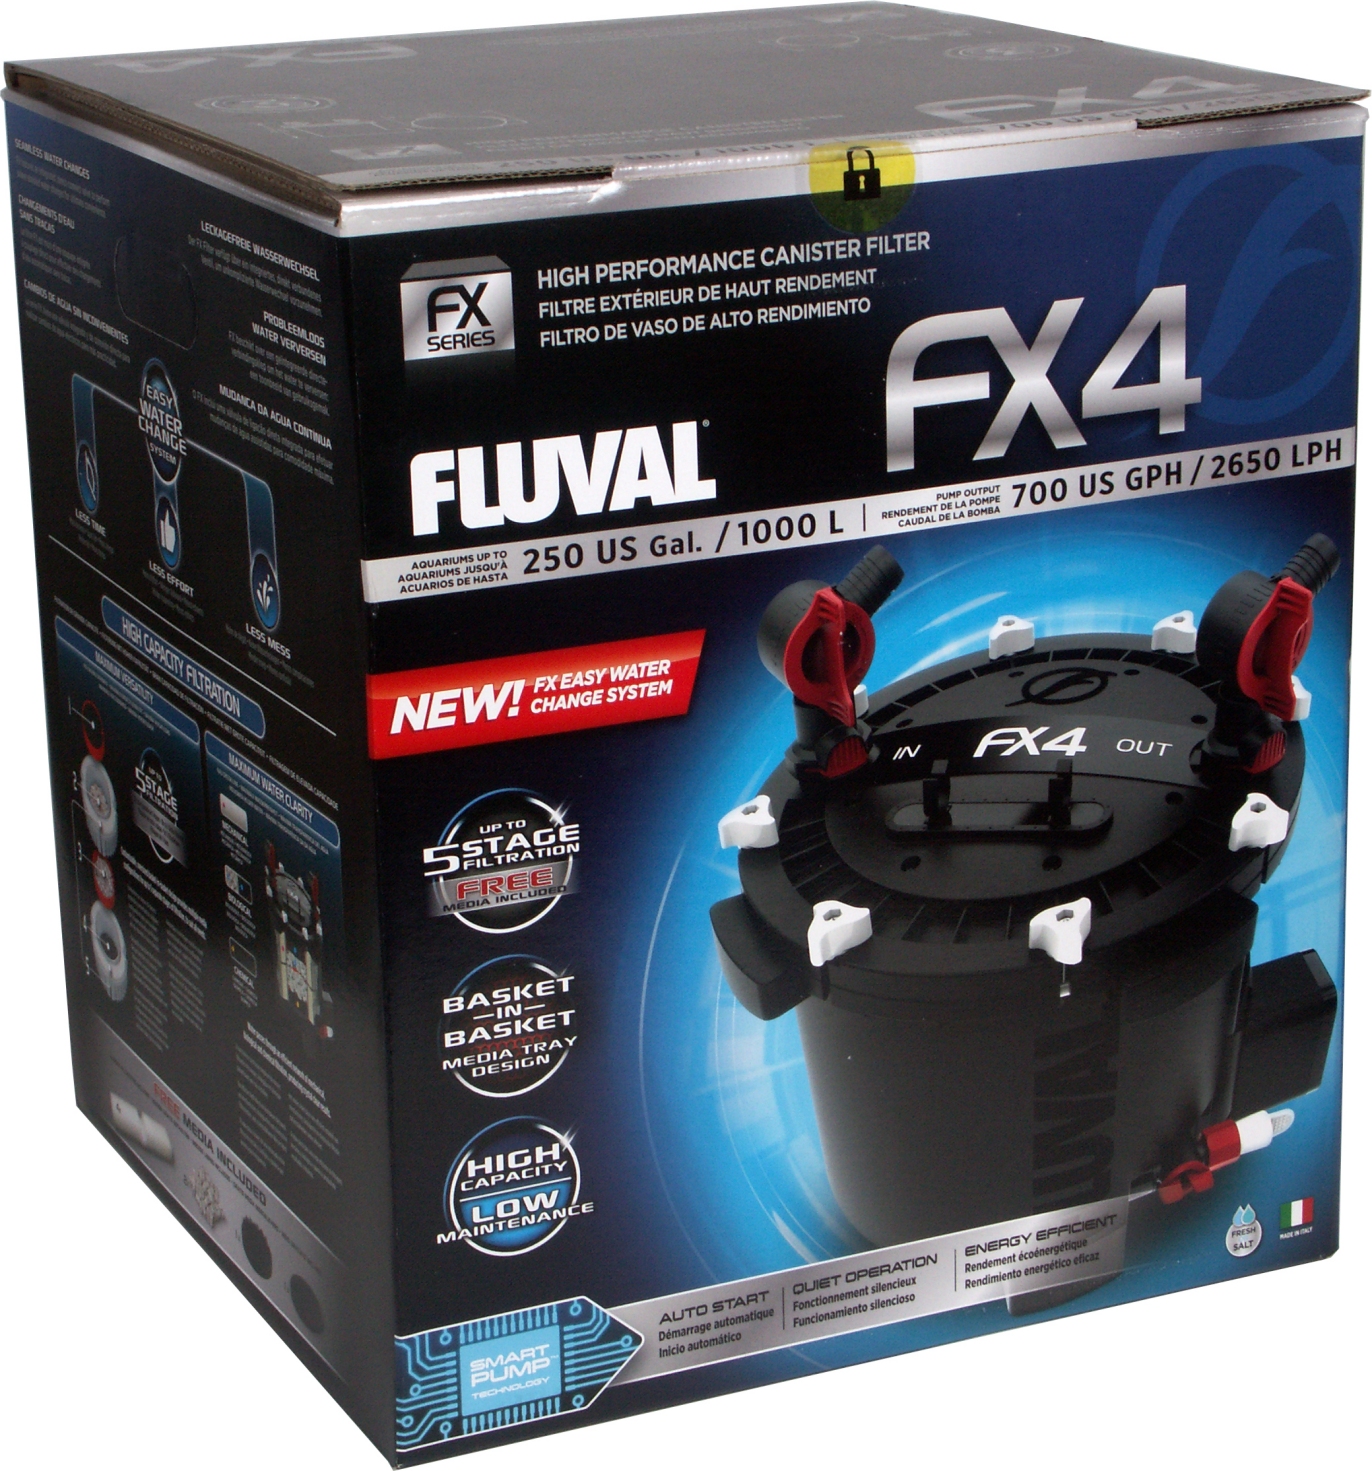 Fluval Fx4 External Aquarium Filter Up Tp 1000 L